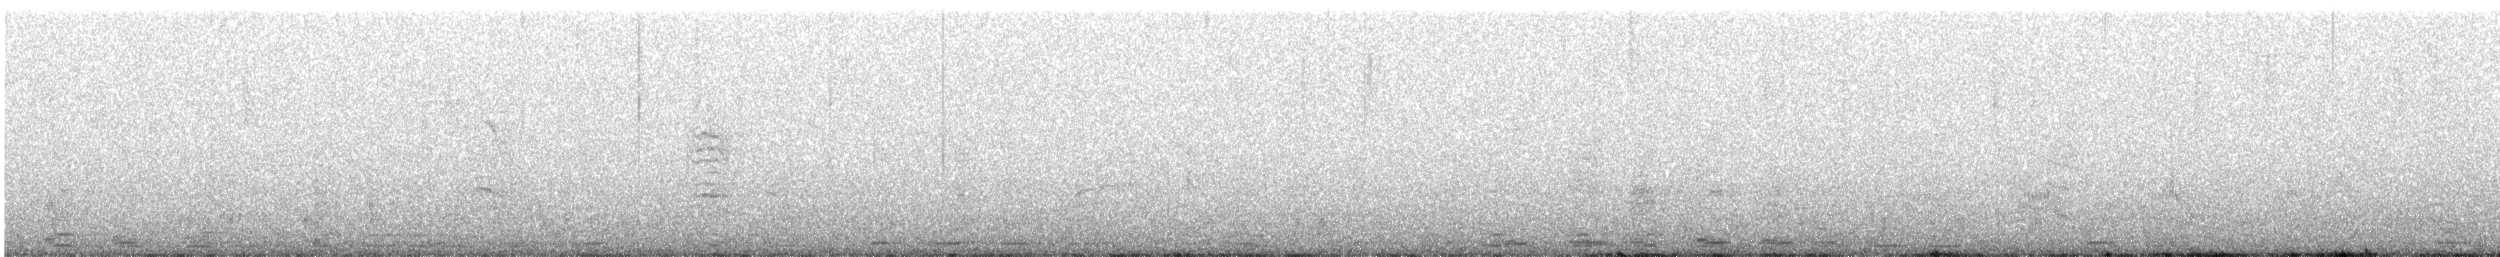 Beltxarga oihularia - ML615815796